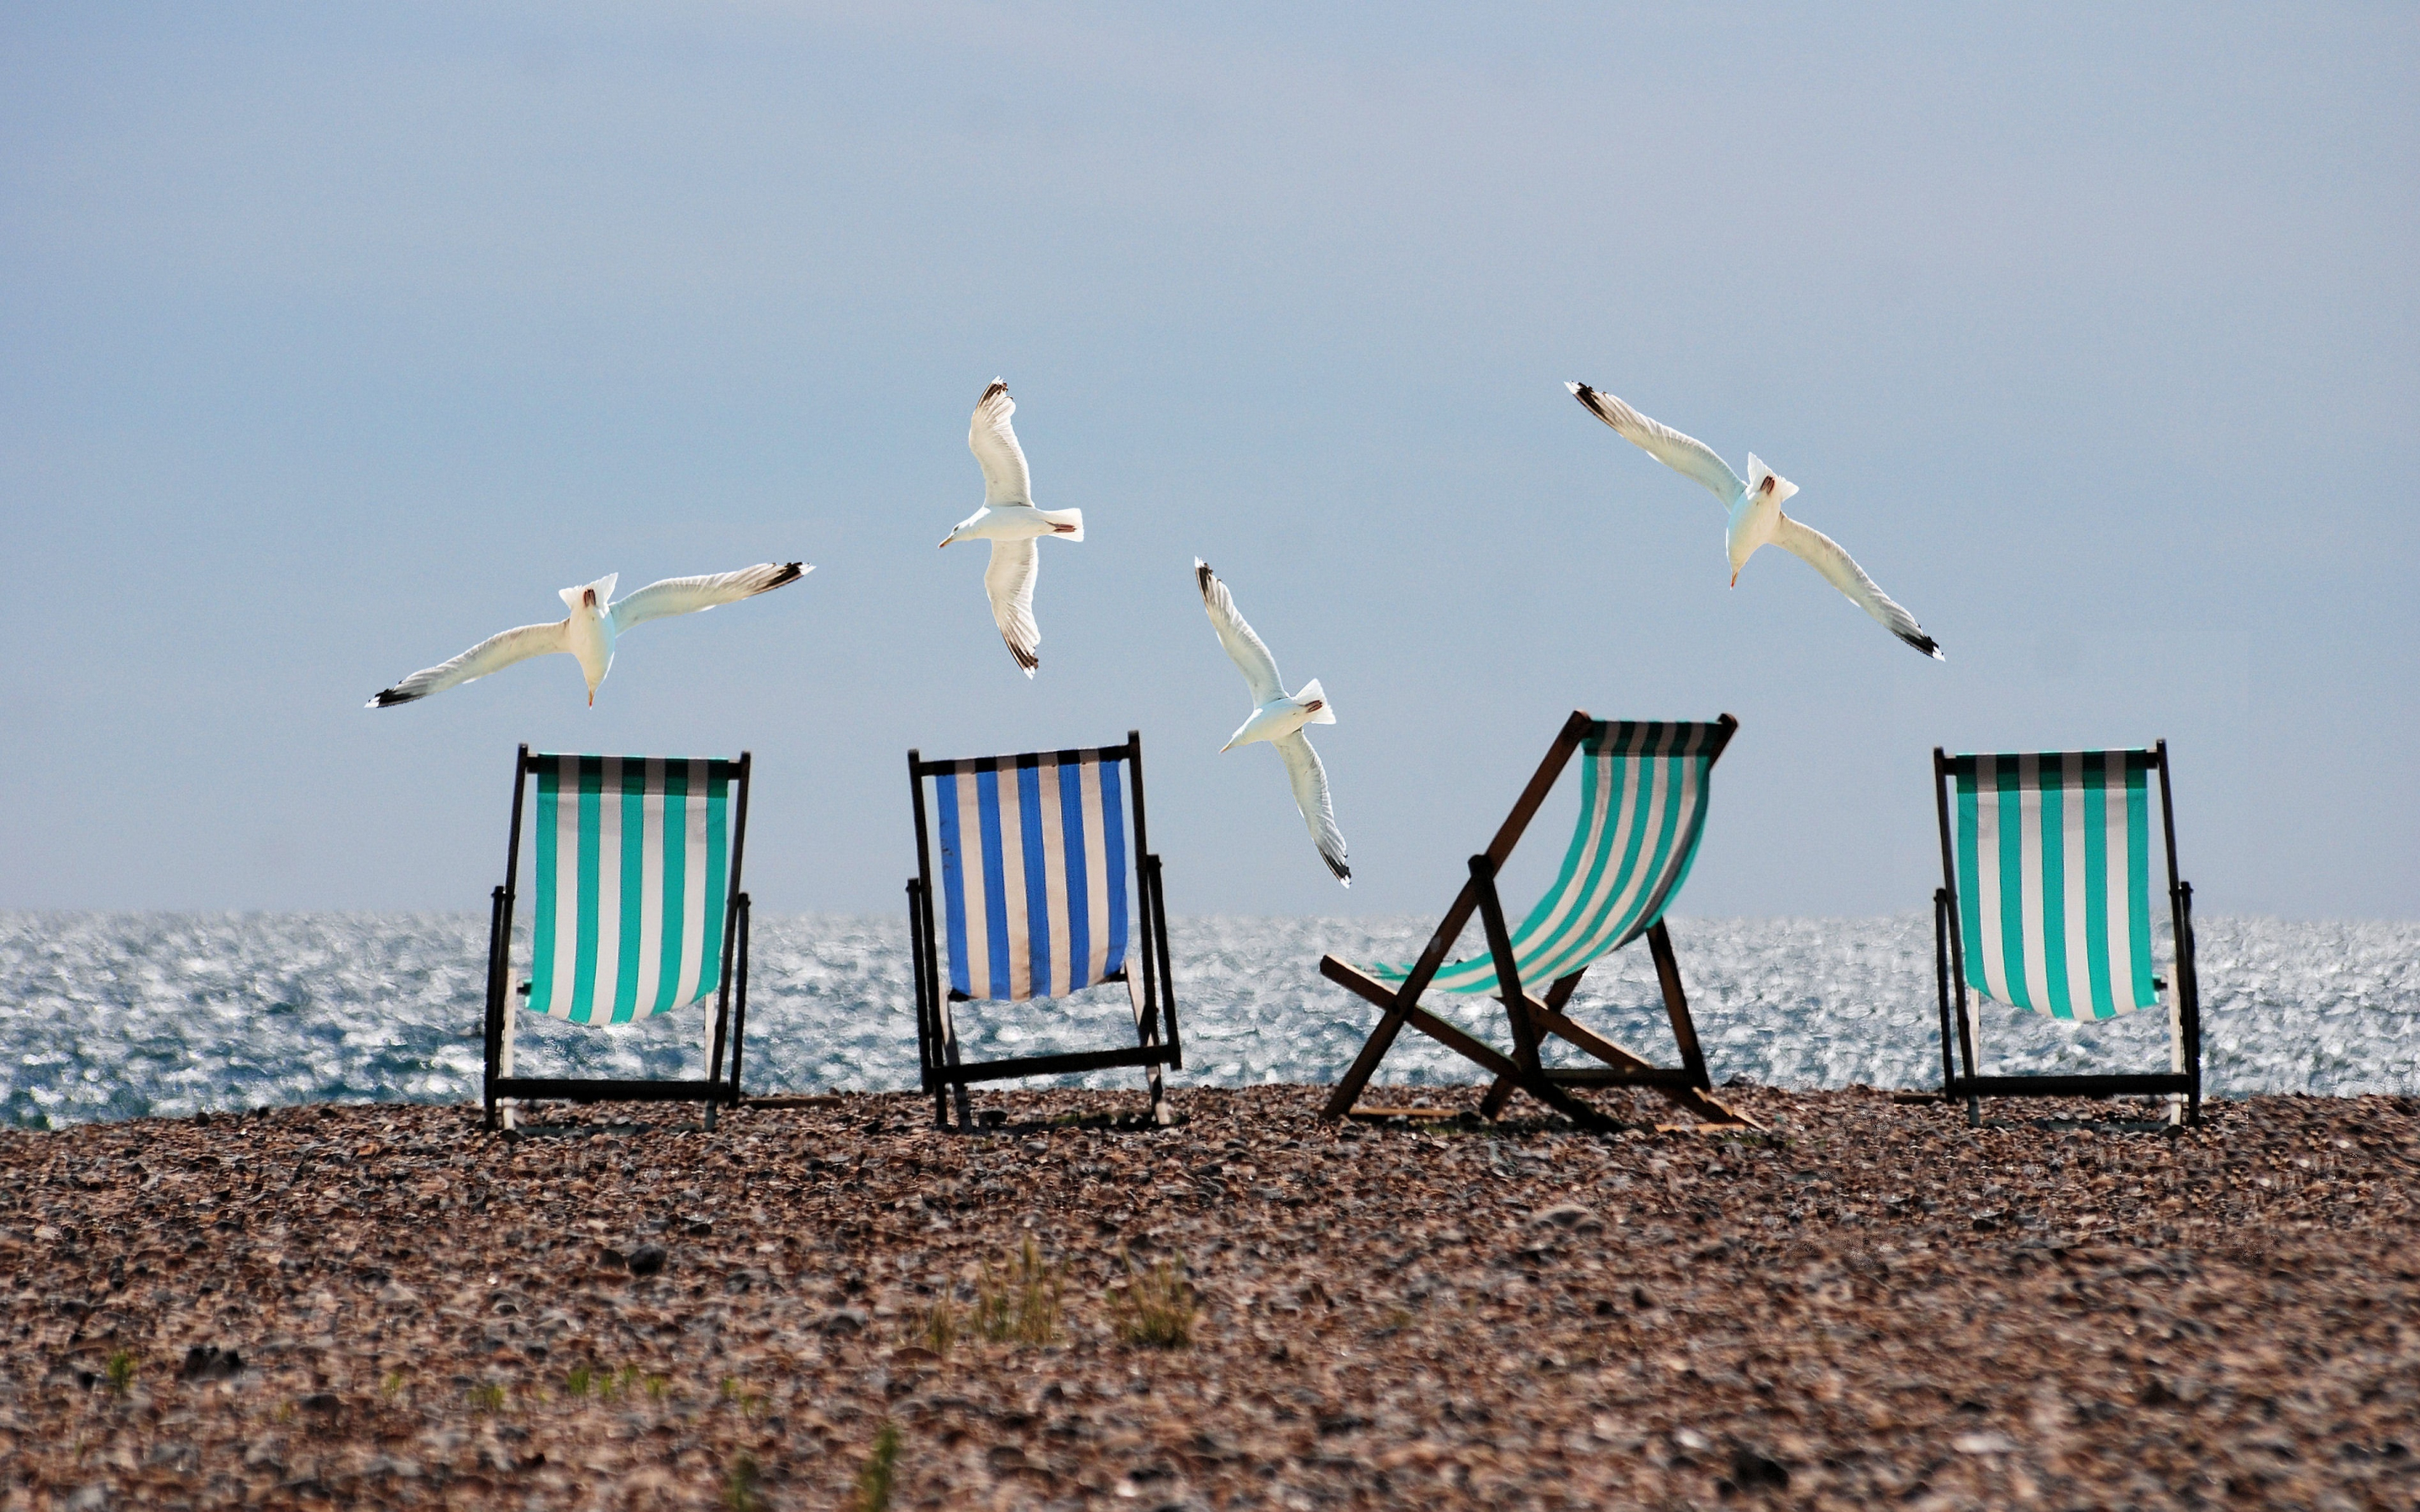 Summer, beach, seagulls, deckchairs, 2880x1800 wallpaper